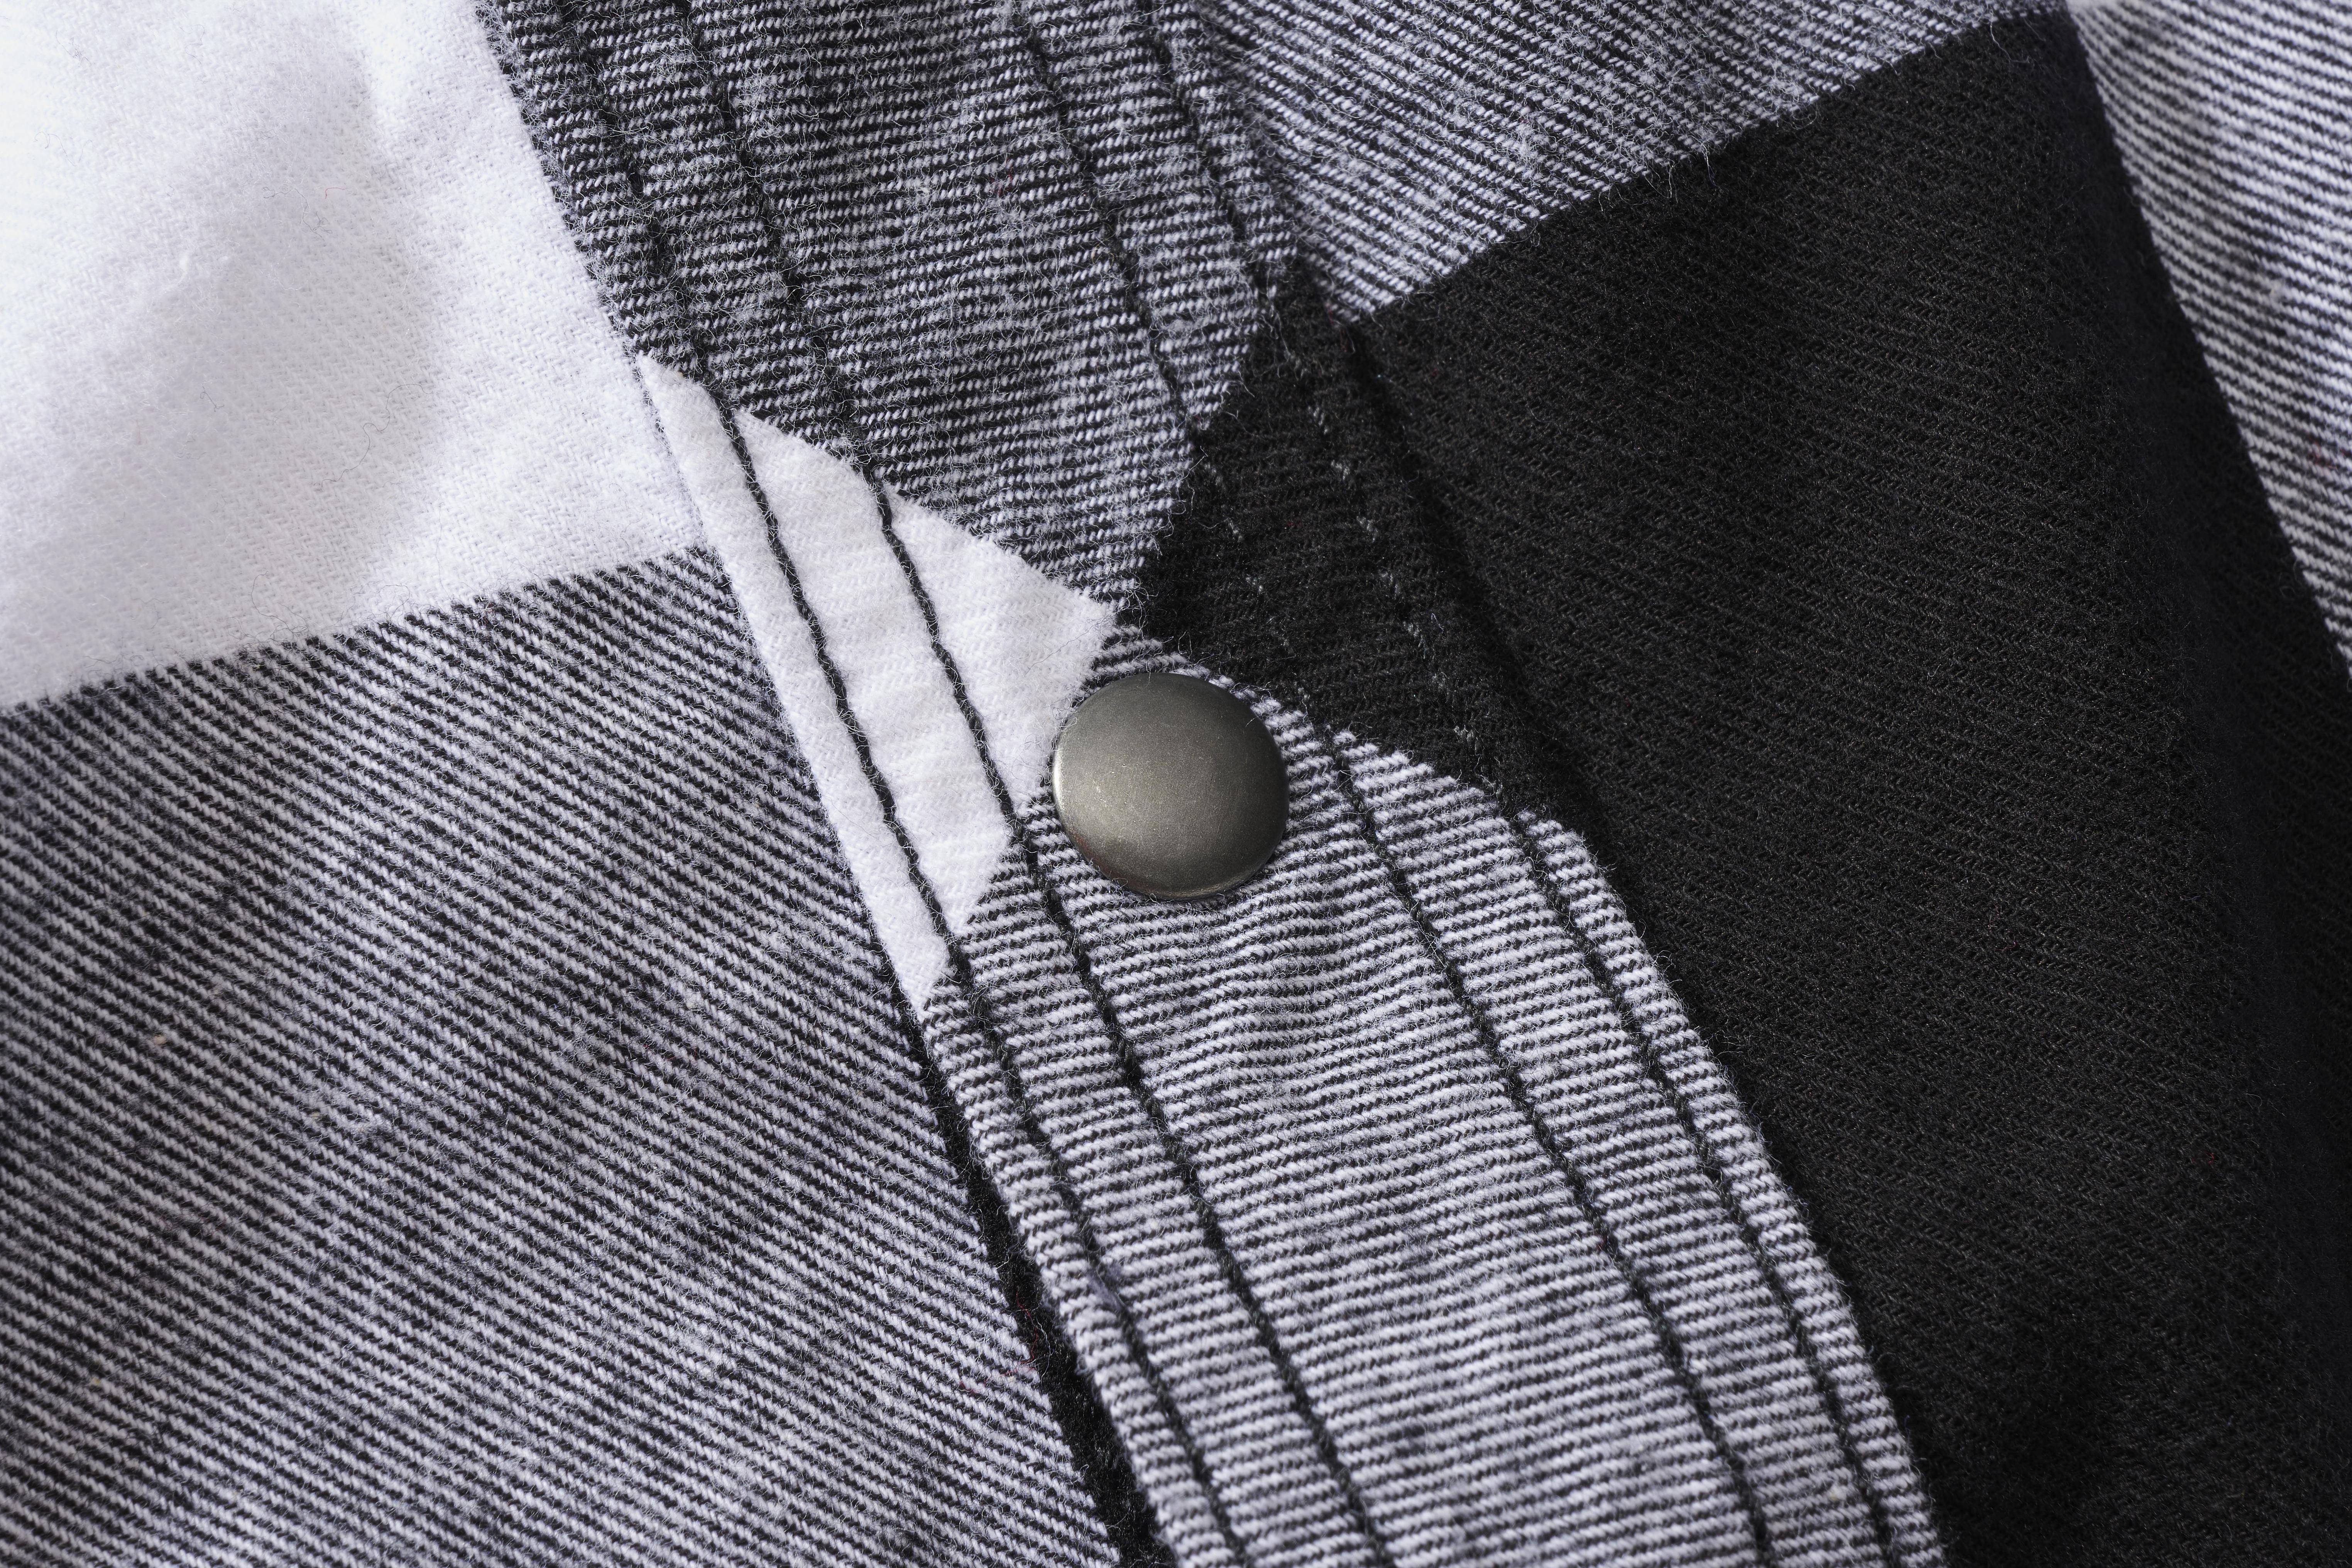 Brandit Checkshirt, Farbe weiß/schwarz, Größe 6XL